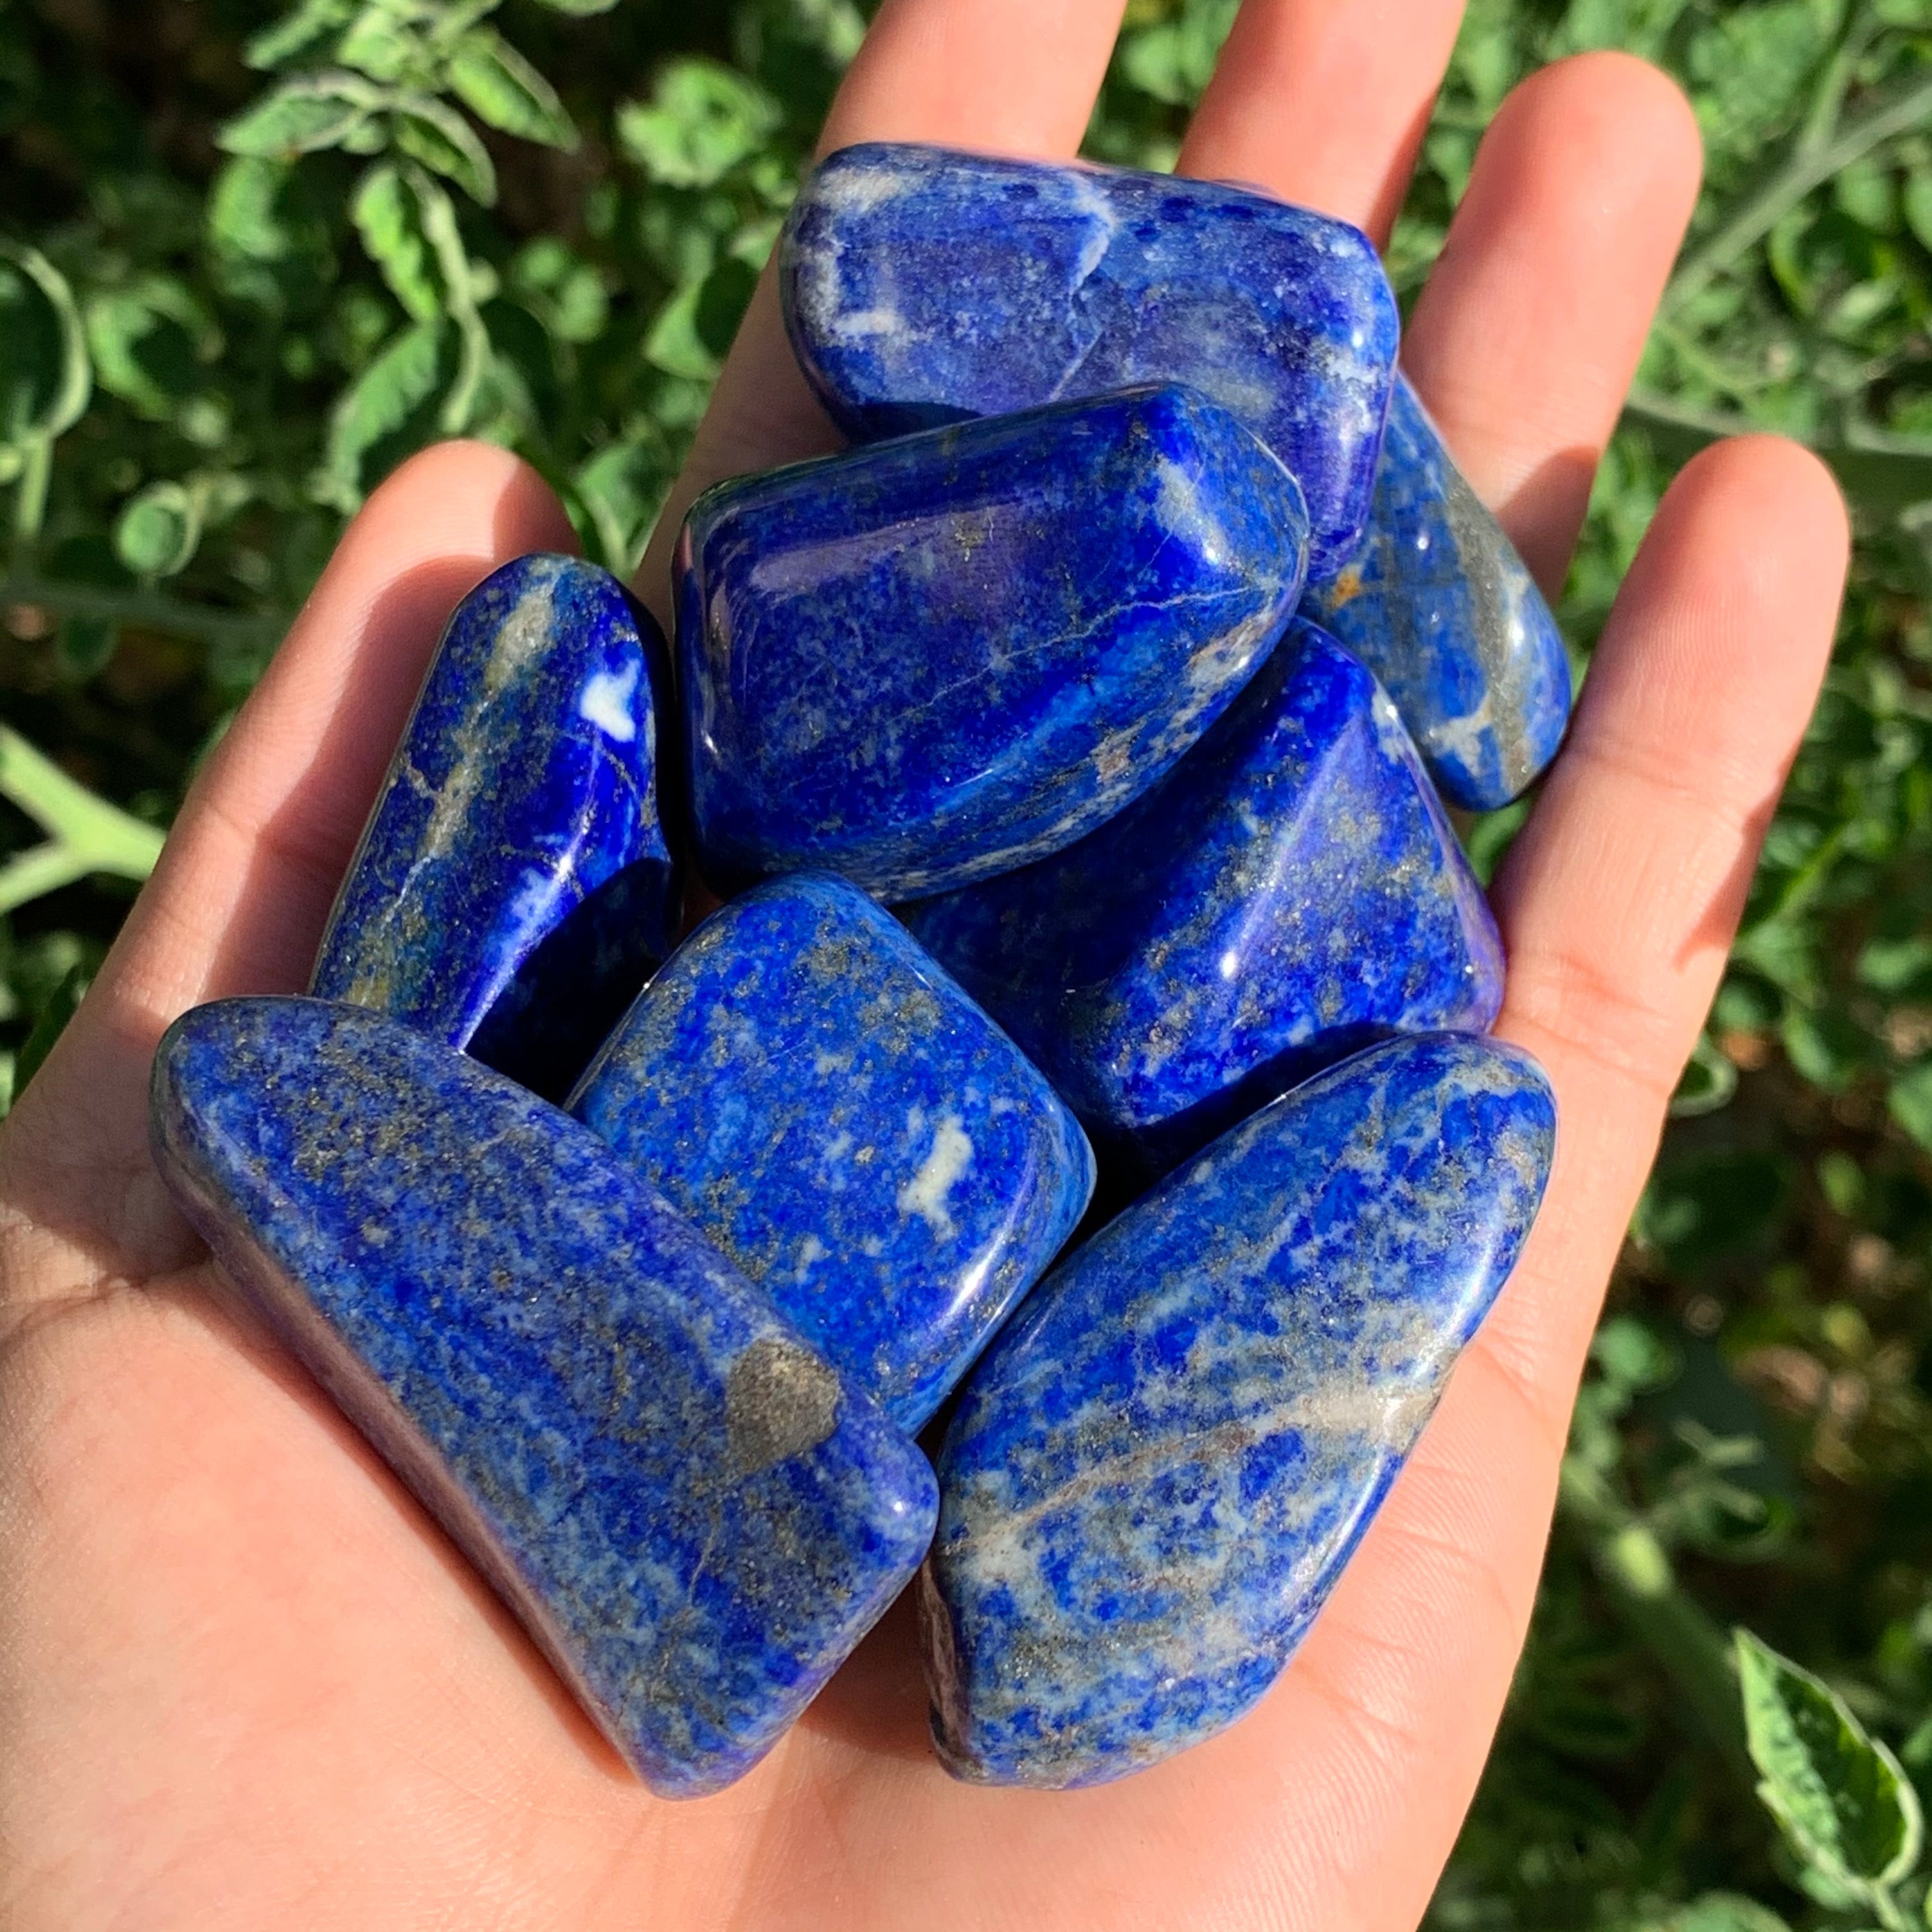 1x Large Lapis Lazuli Tumble! – lemuriacrystalshop